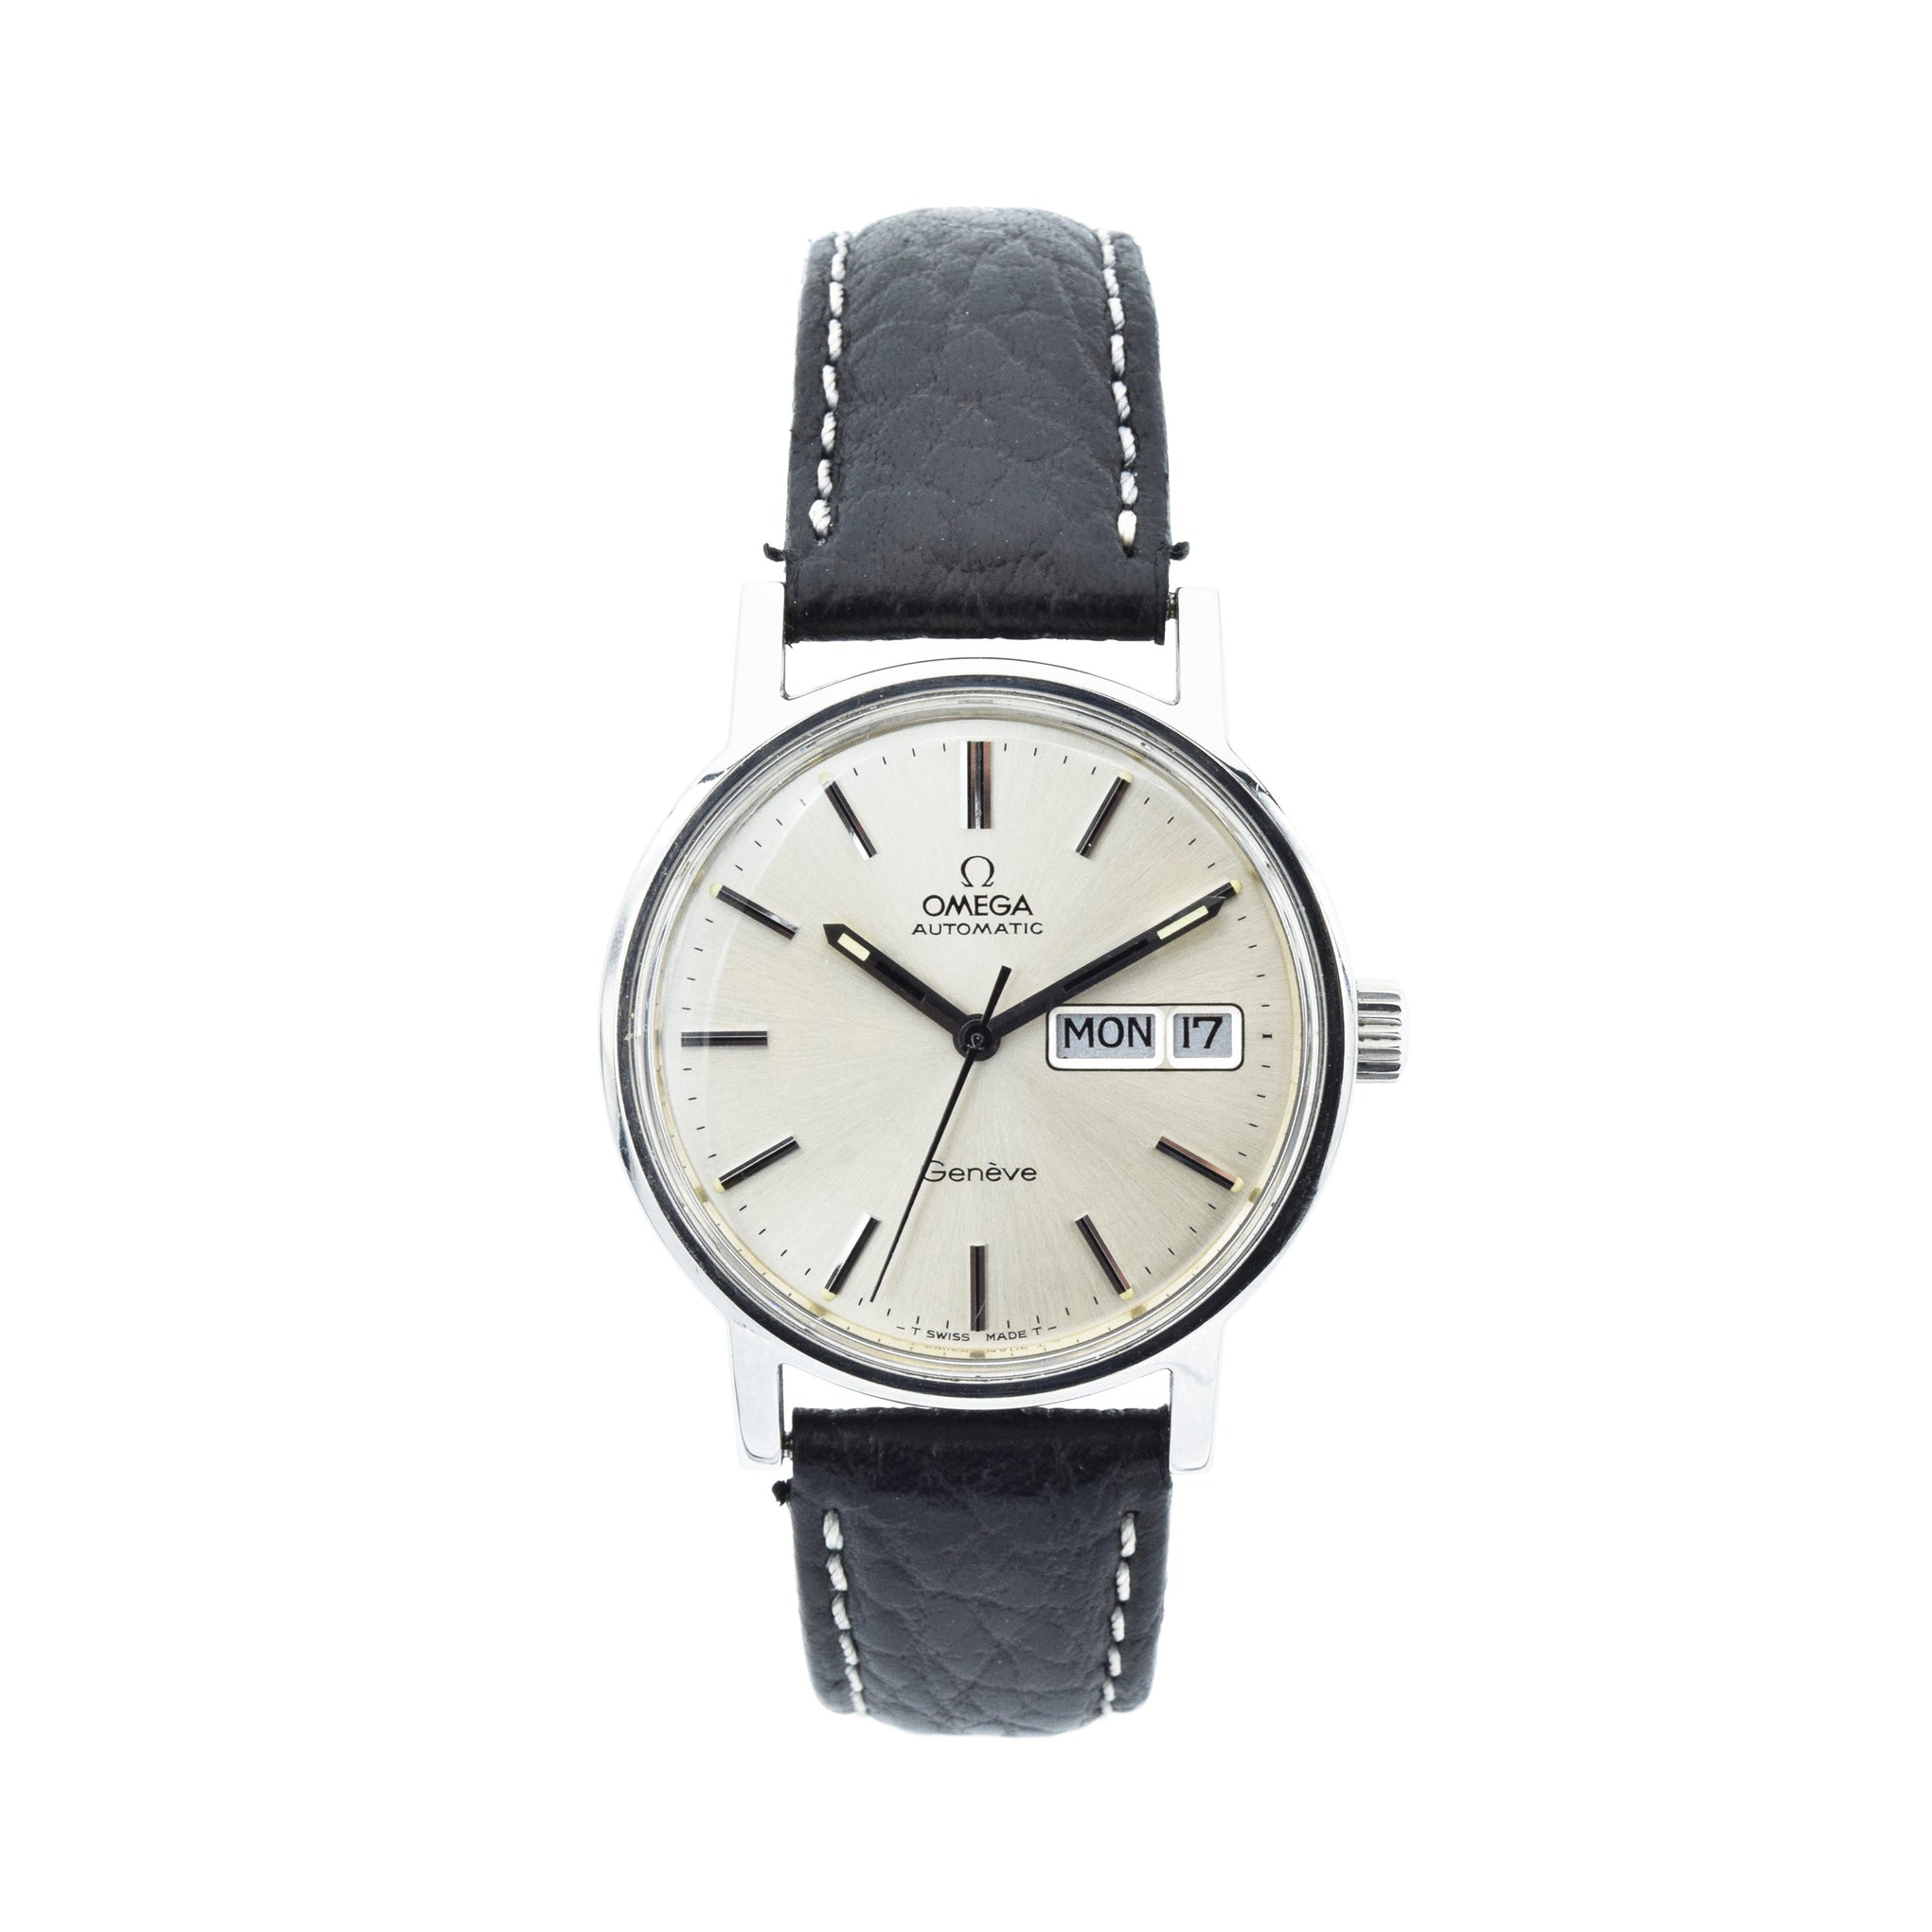 Vintage 1970s Omega Watch